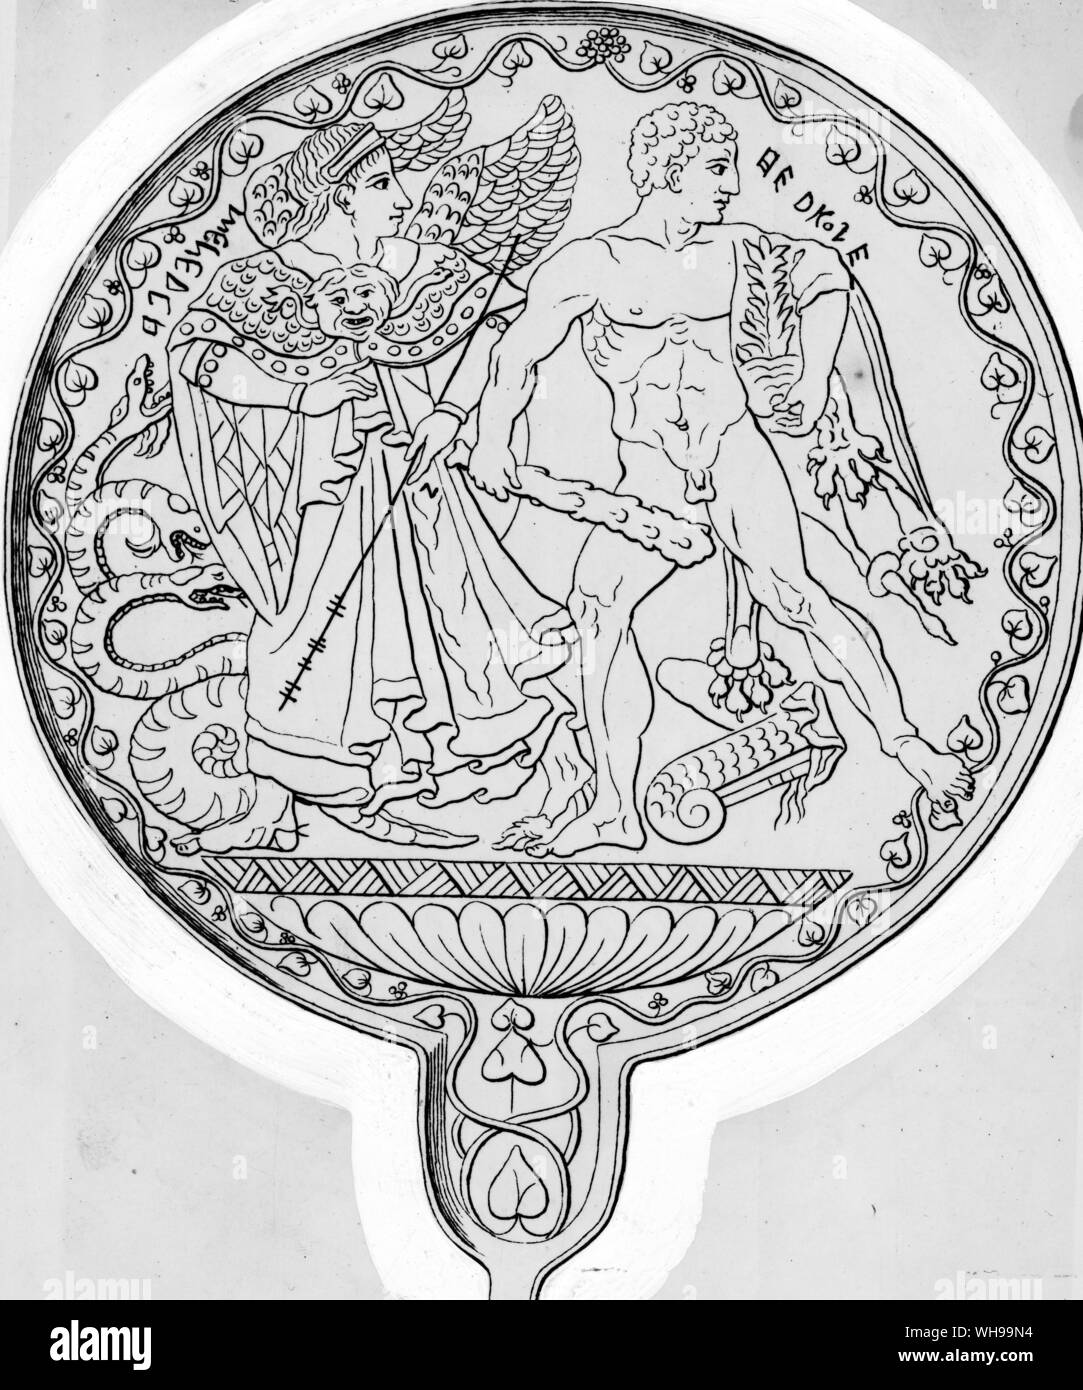 Eine Gravur auf einem etruskischen Spiegel Spiegel Menrva führenden Hercules zu seiner zweiten Arbeit die Zerstörung der vielen Hydra vorangegangen Stockfoto